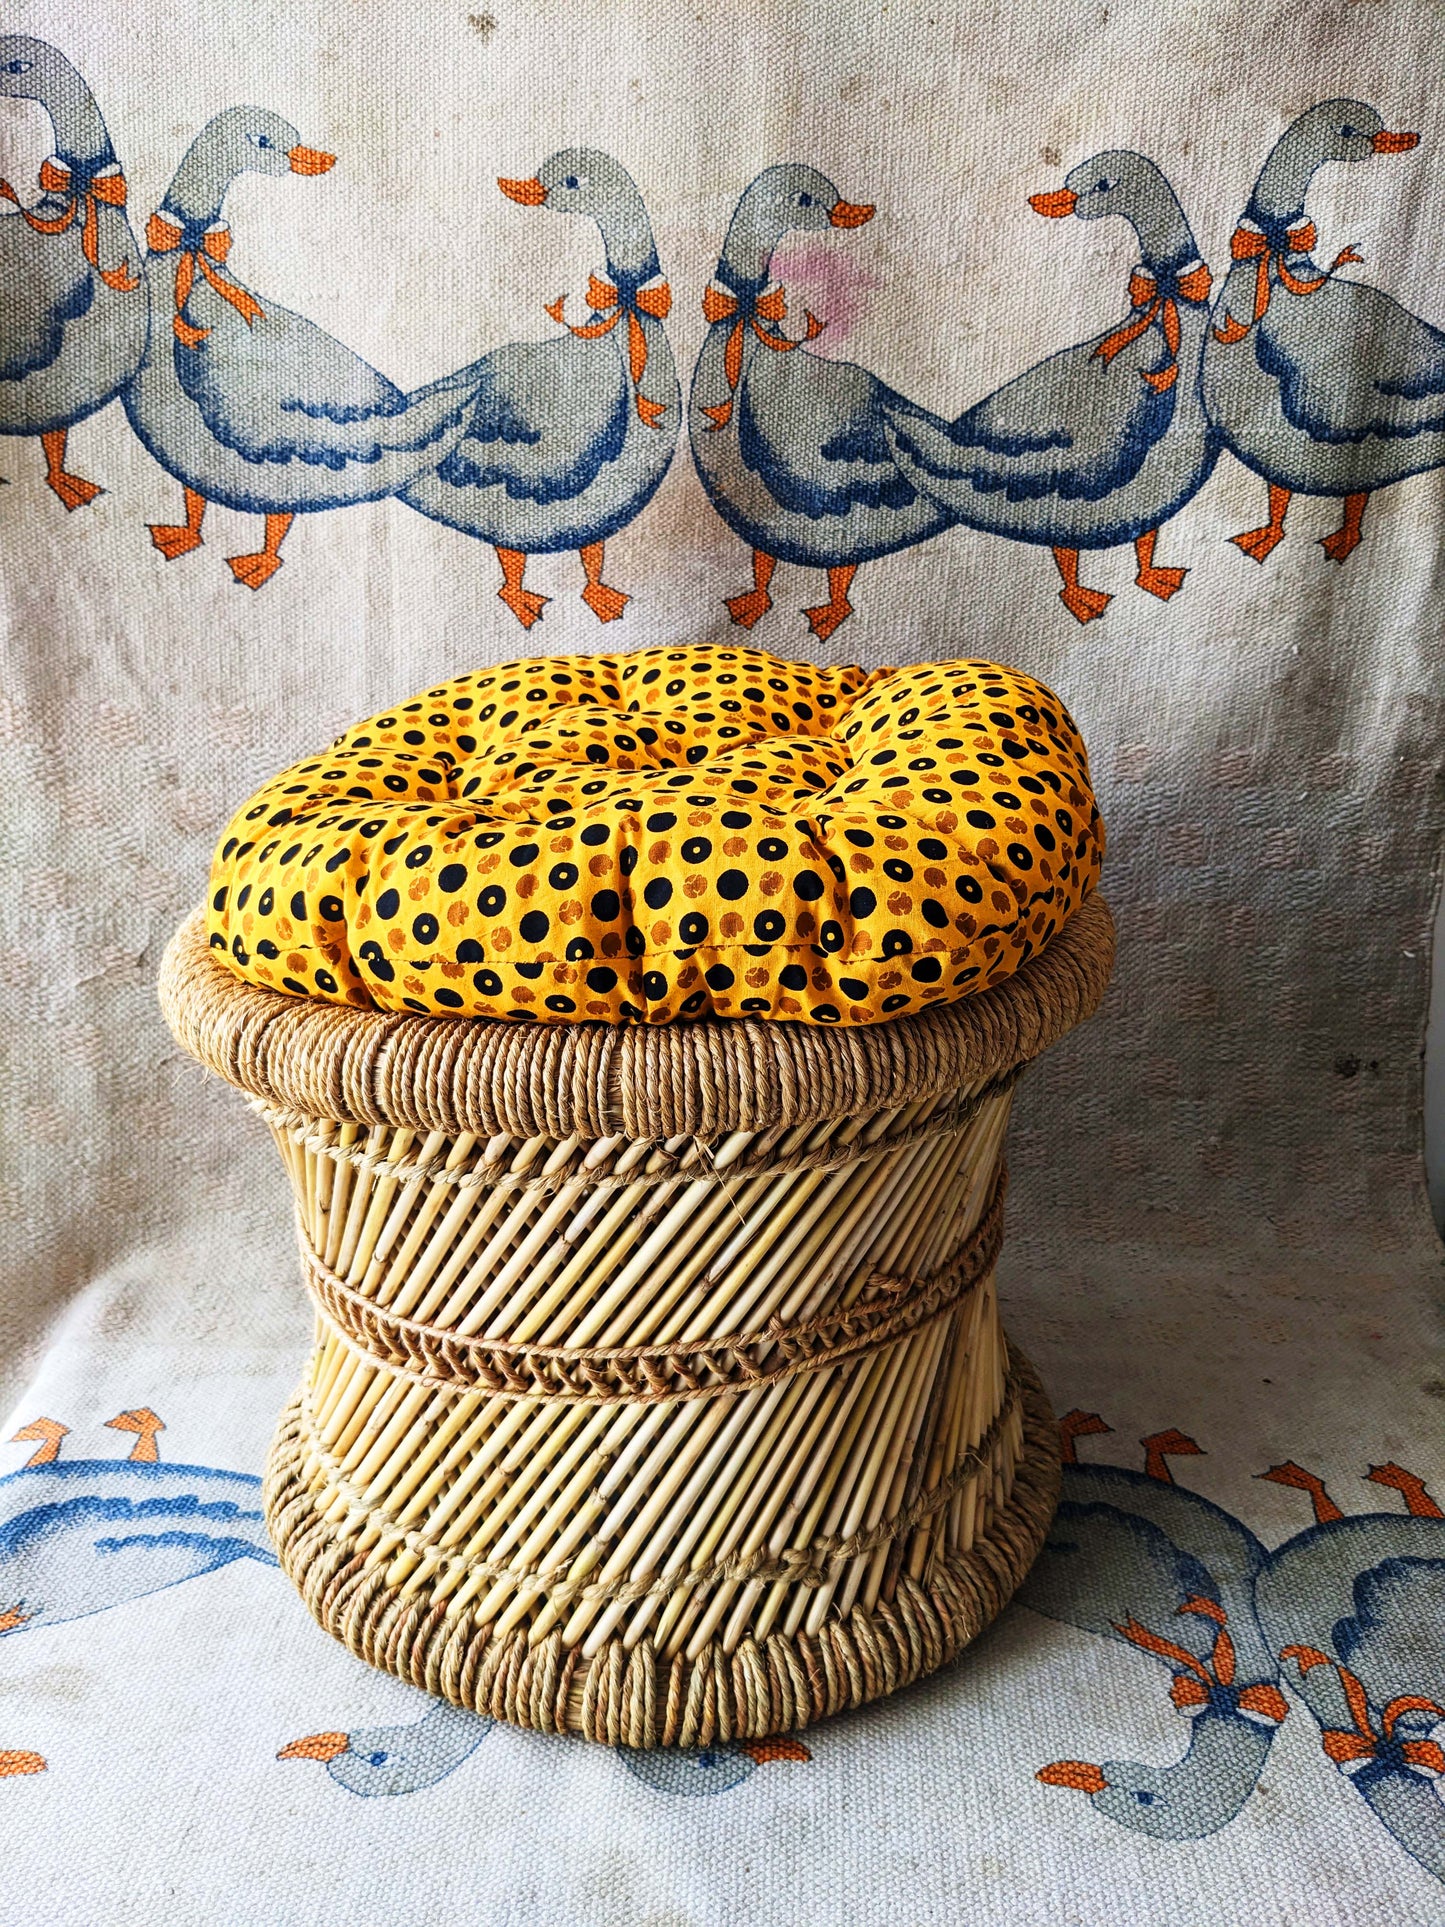 Mudda stool with cushion